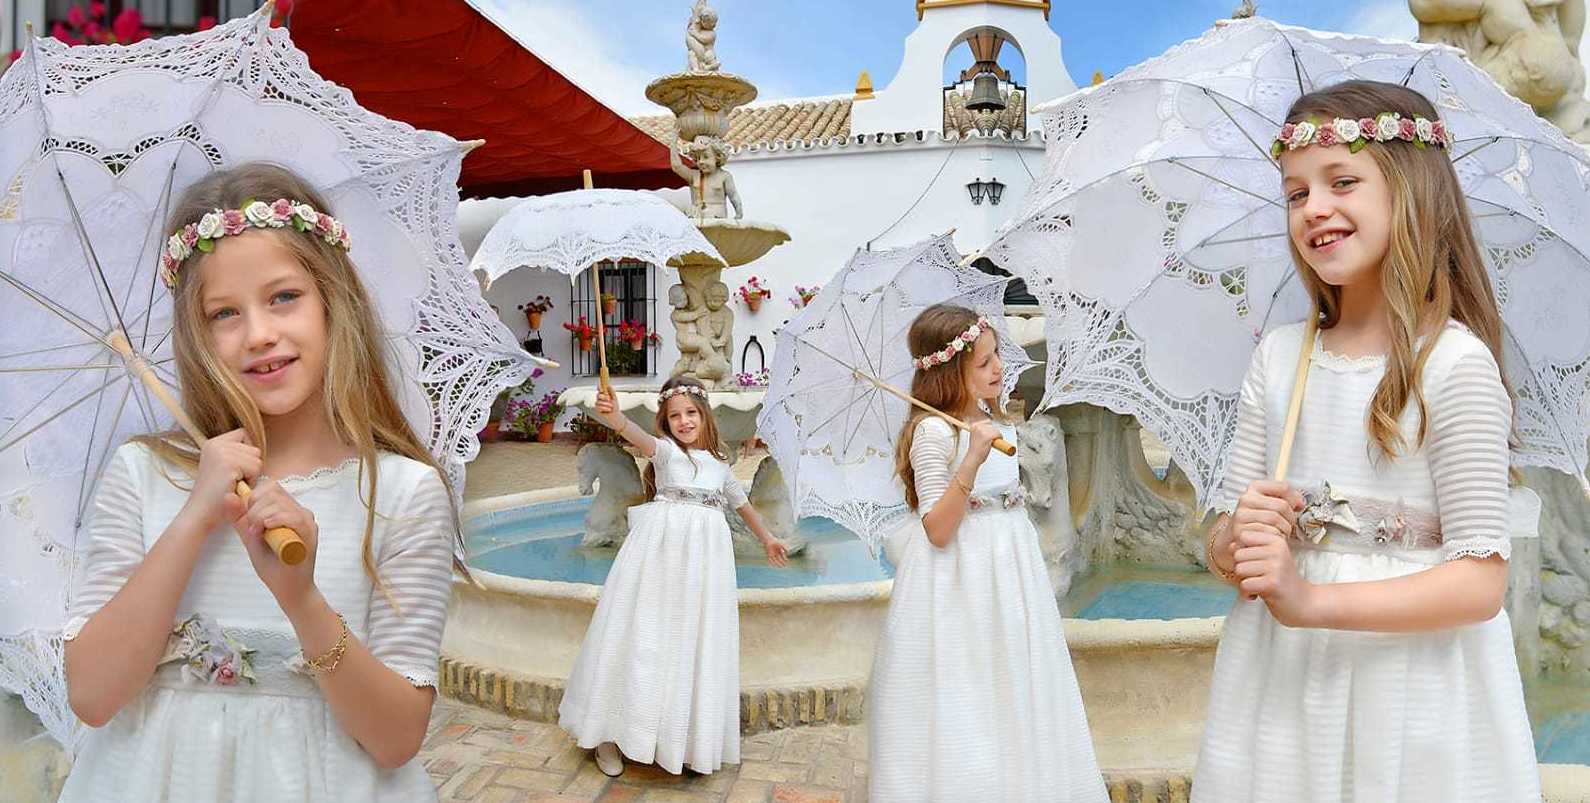 Foto 5 de Celebración de bodas en Alcalá de Guadaíra | Hacienda Mendieta